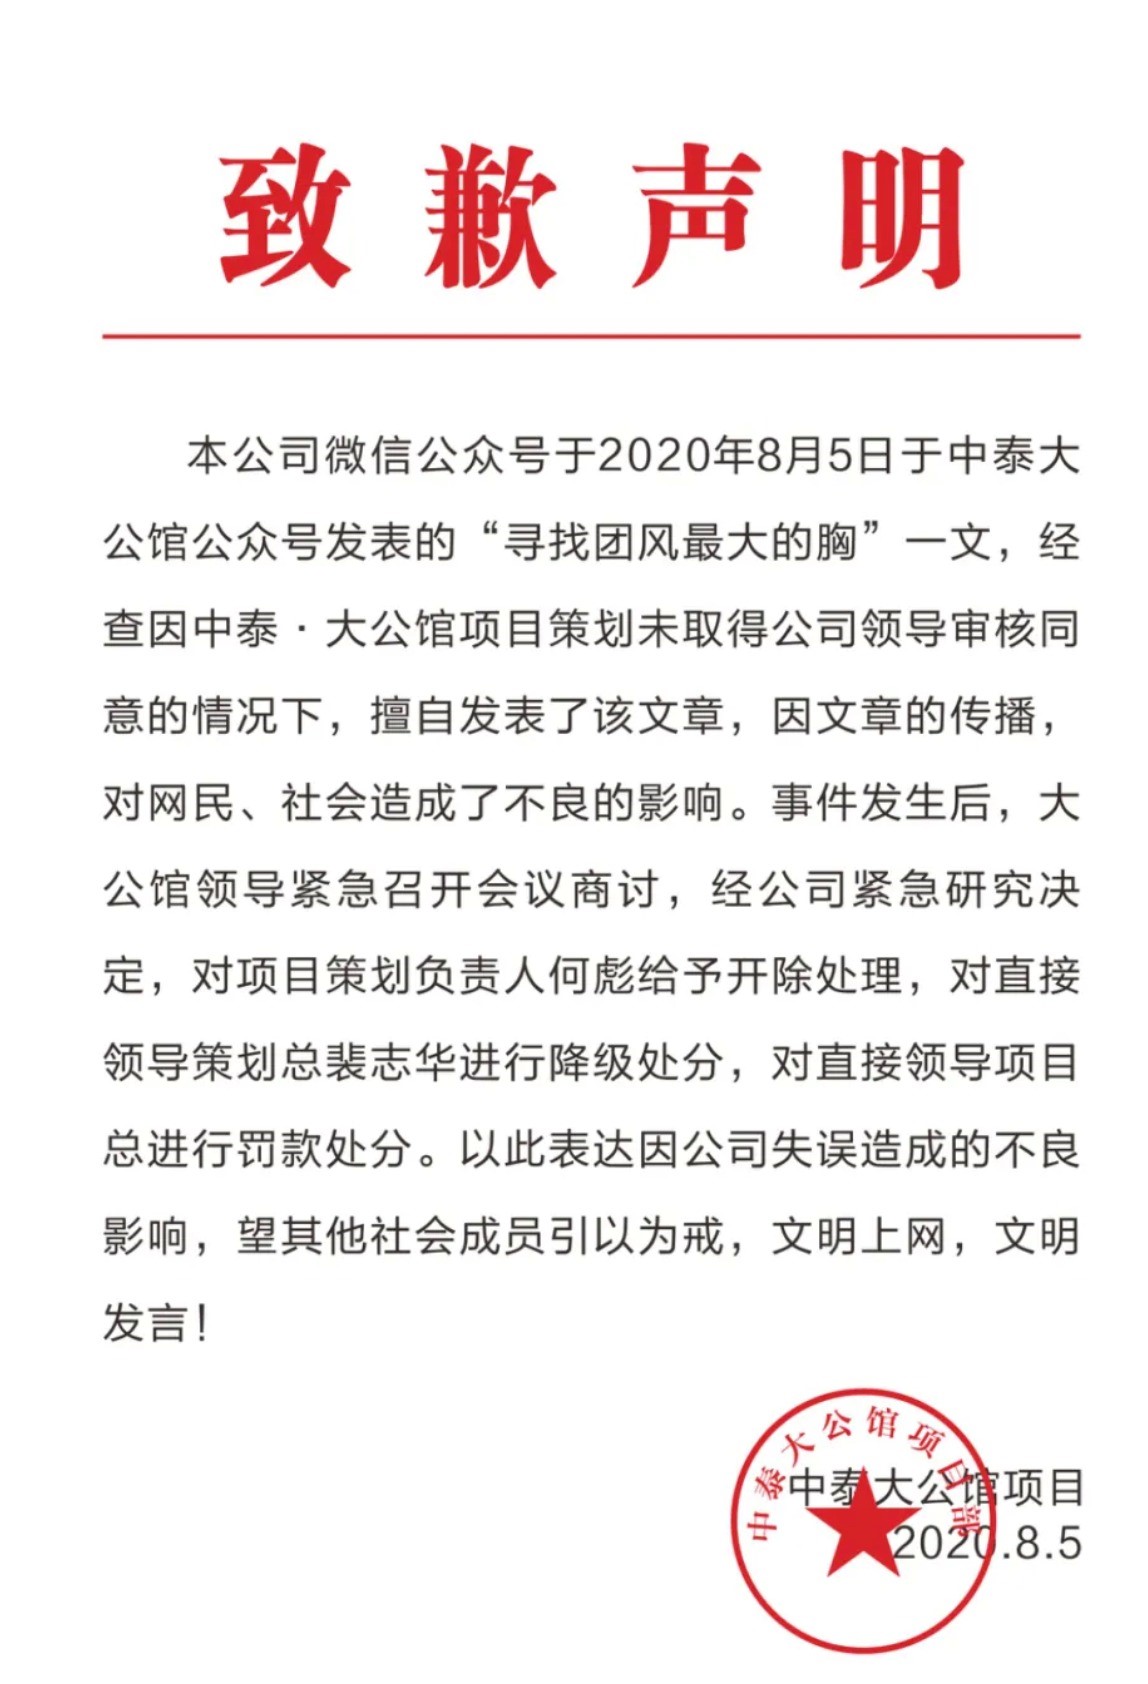 微信公众号“中泰大公馆”8月6日发布的致歉声明。